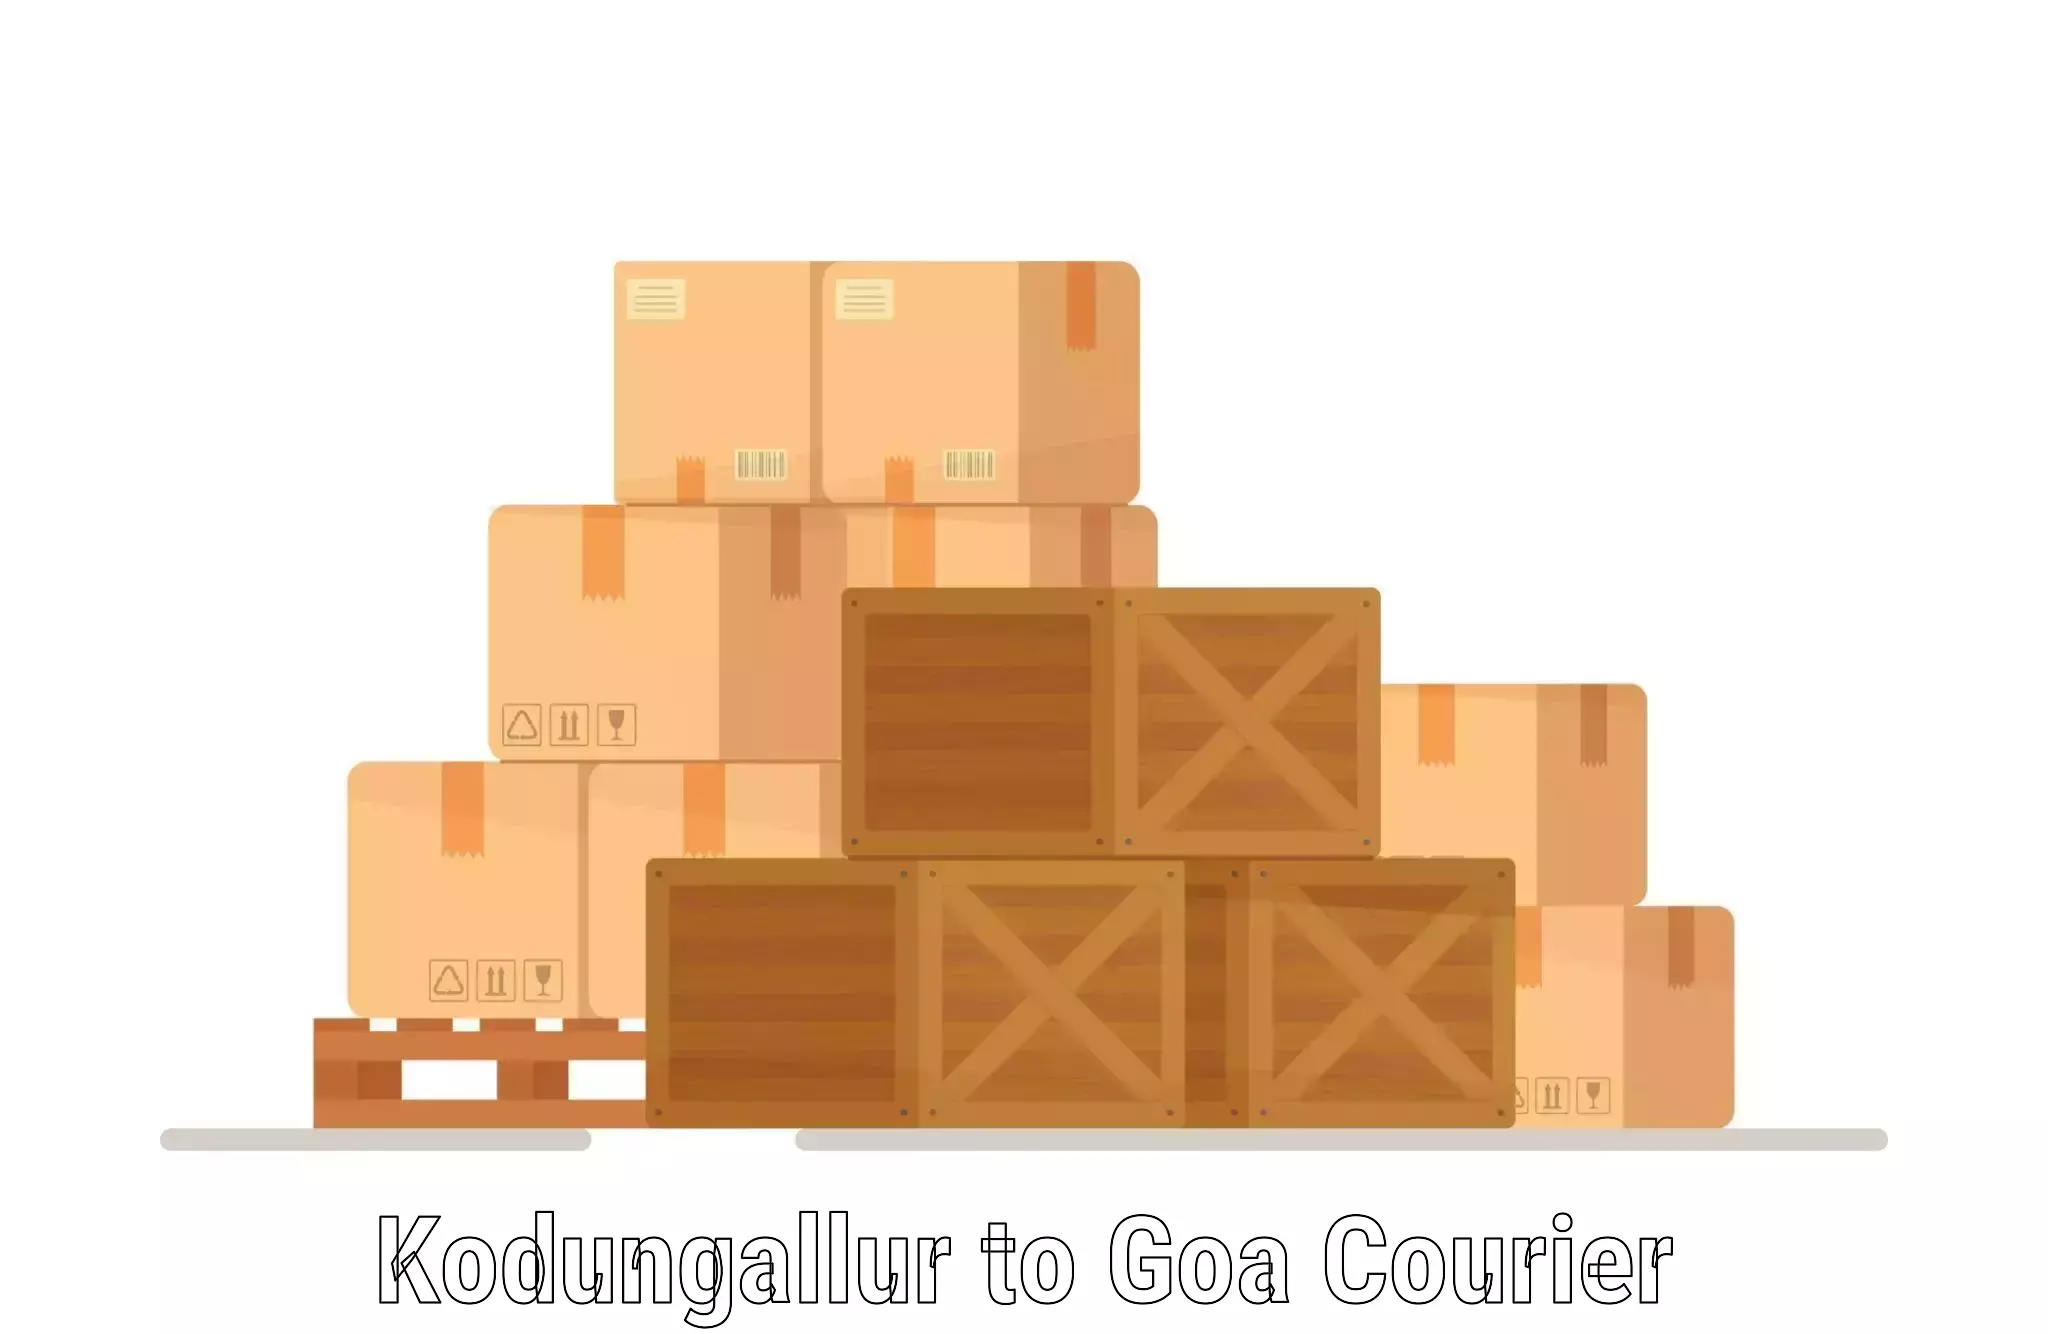 Courier app Kodungallur to IIT Goa